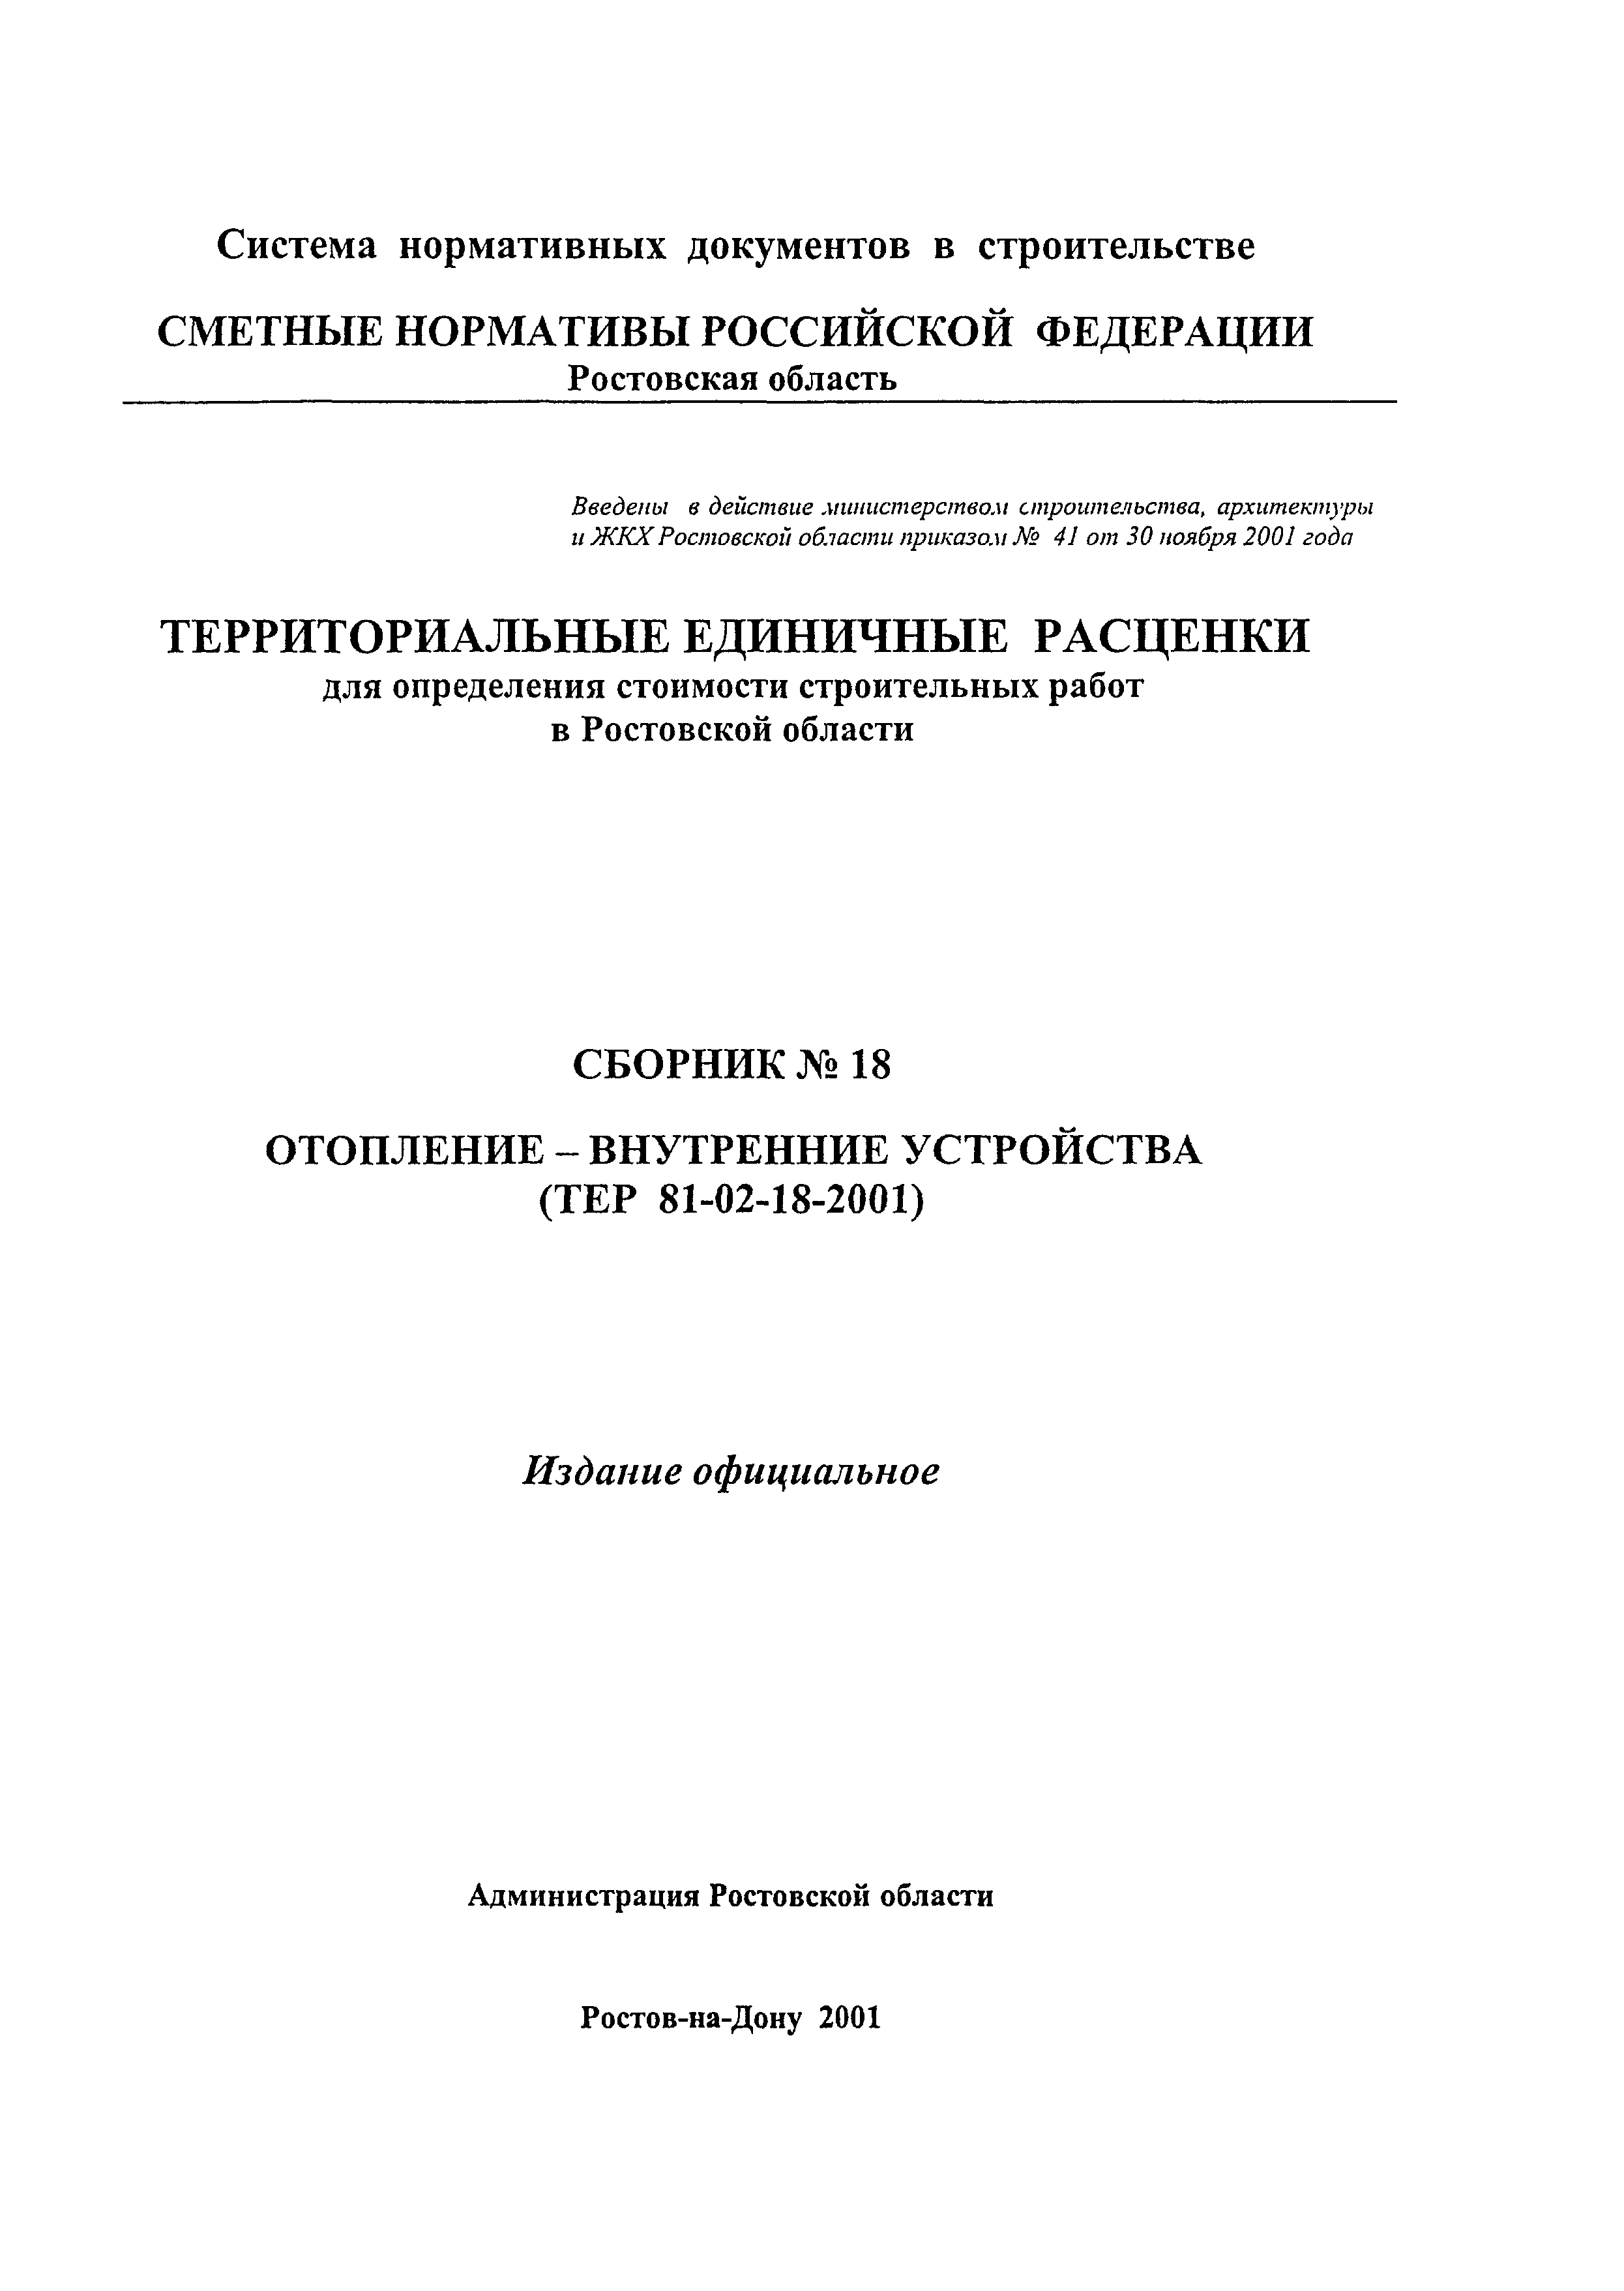 ТЕР 81-02-18-2001 Ростовской области